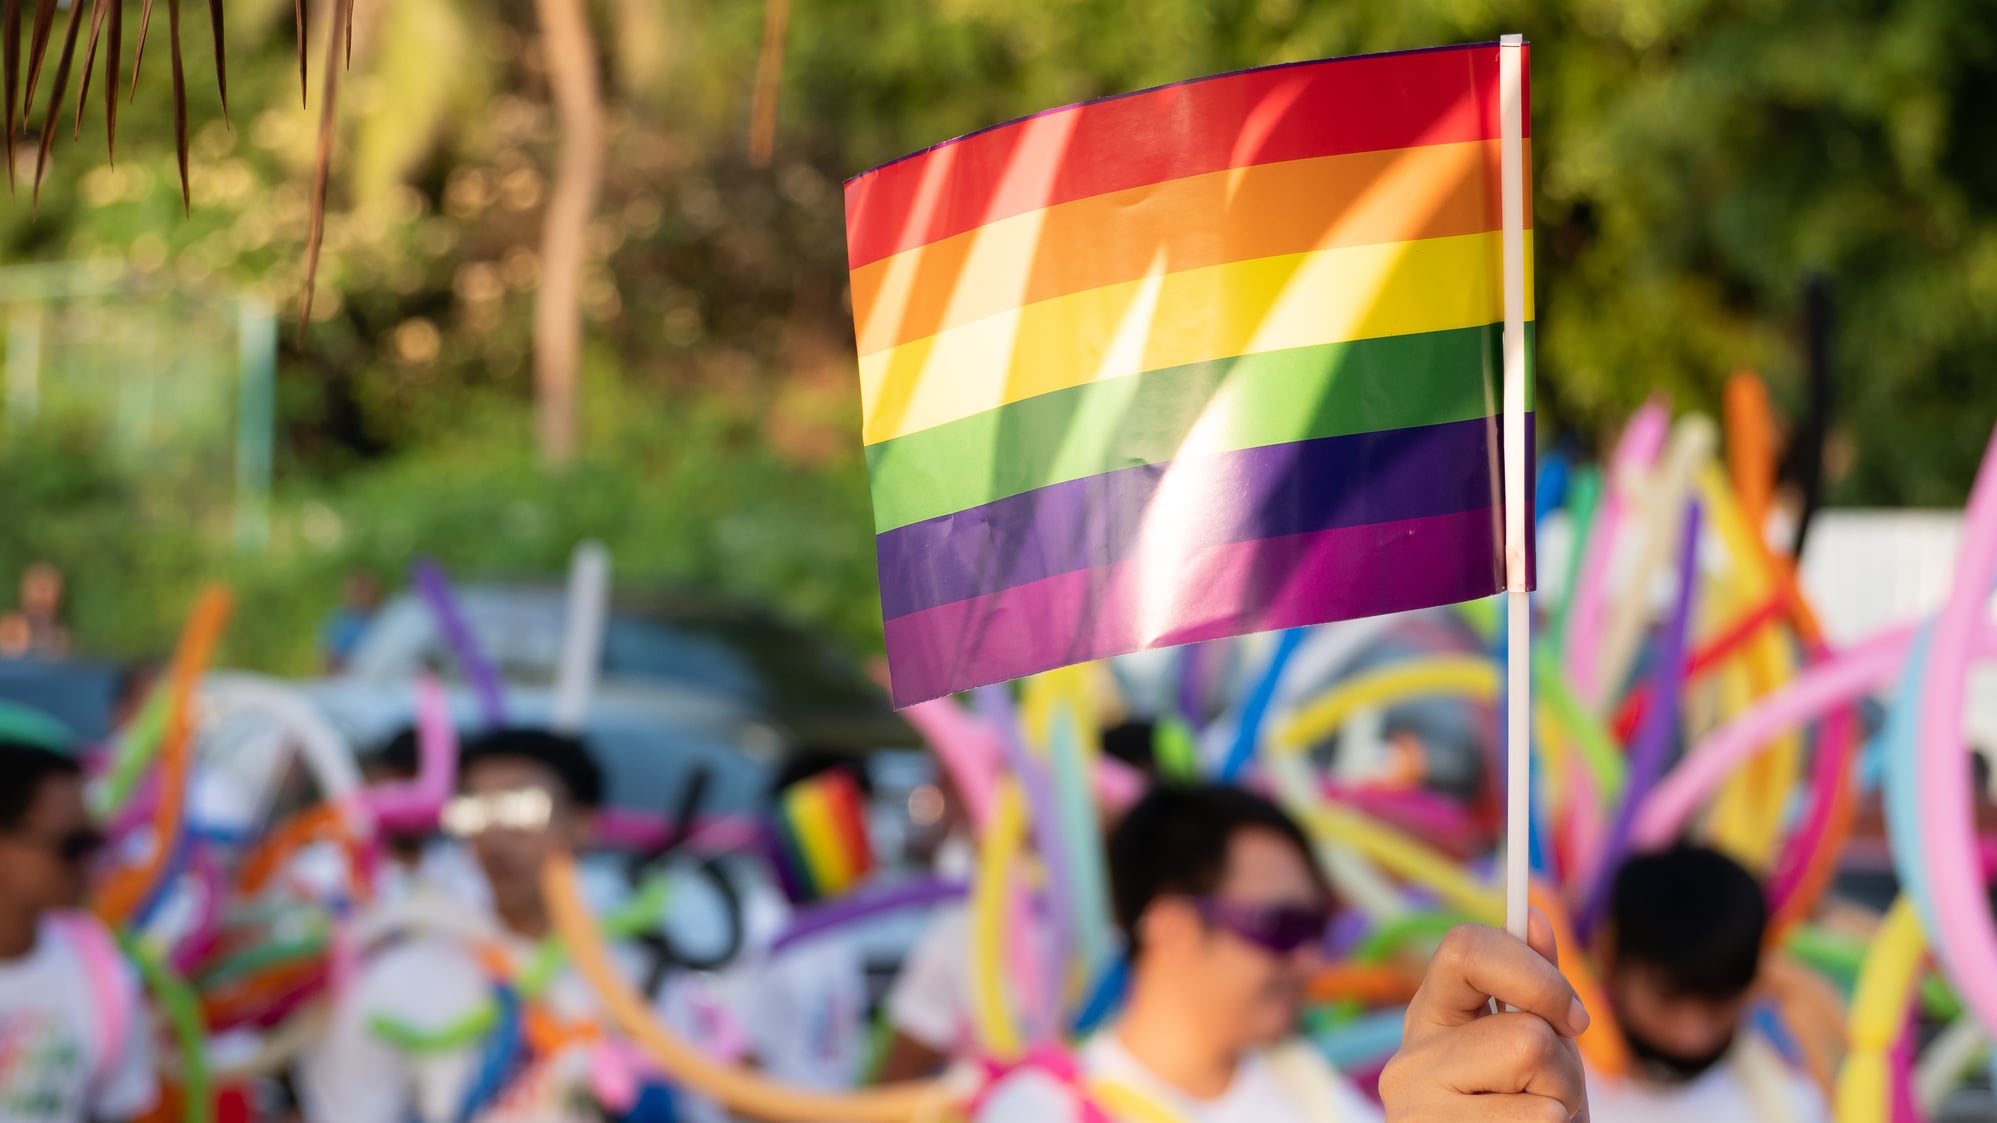 La comunidad LGBTQ+ reafirmó su lucha por la igualdad con atuendos coloridos, charlas sobre VIH y diversidad, y un taller drag